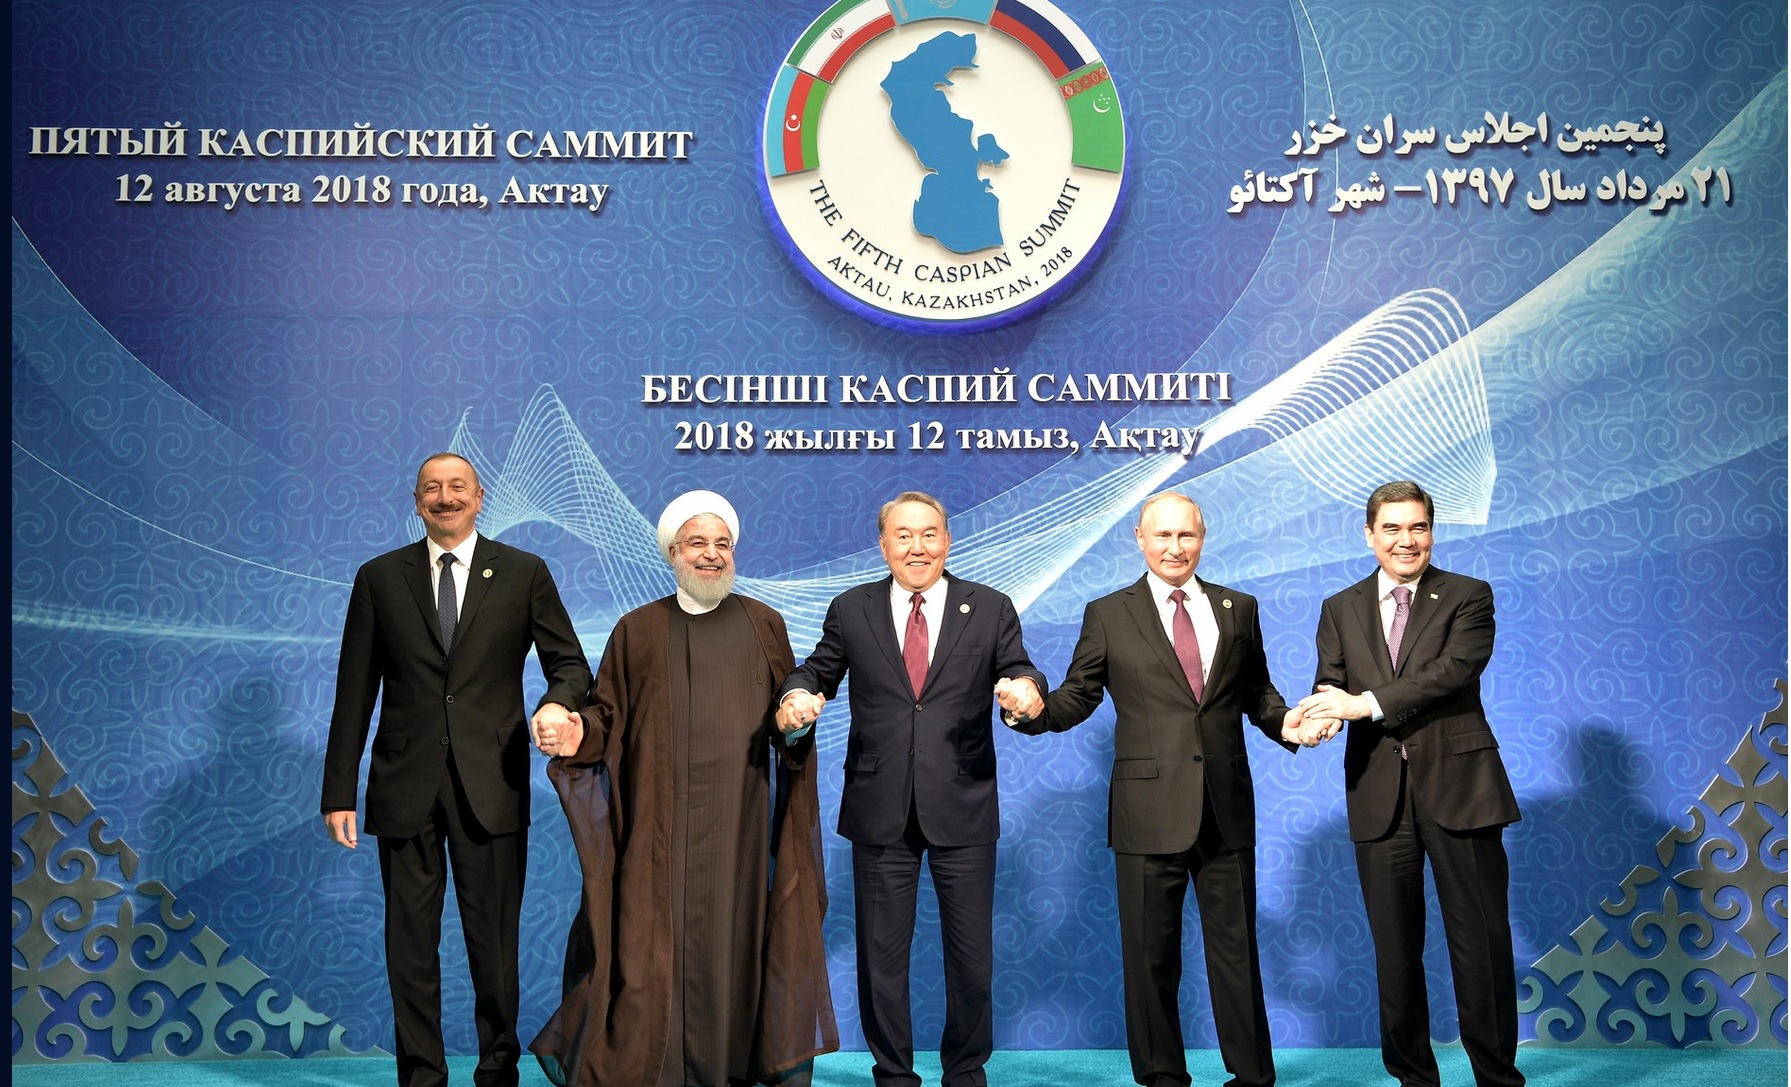 Szczyt Kaspijski z udziałem Władimira Putina i pozostałych przywódców regionu. Fot. Kremlin. ru